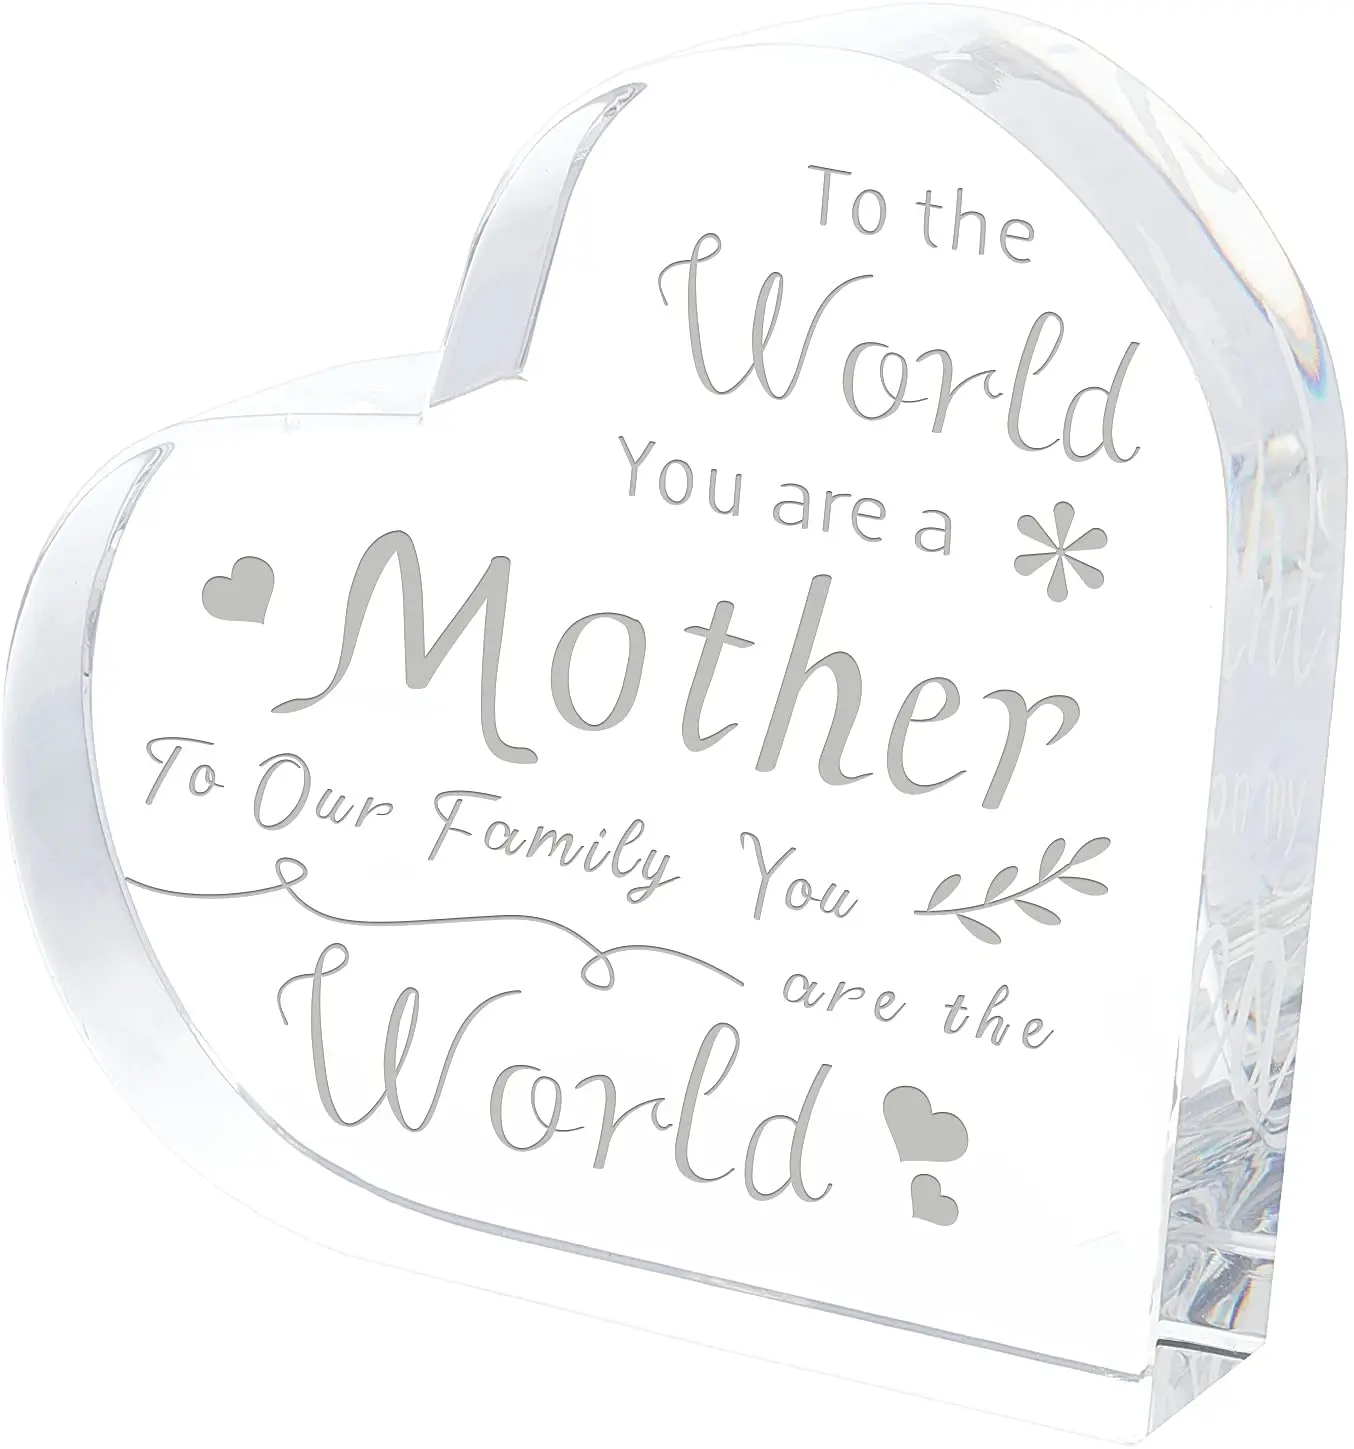 

Сувениры из хрустального стекла в форме сердца и пресс-папье, подарки из хрустального стекла, подарок на уникальный день рождения для матер...